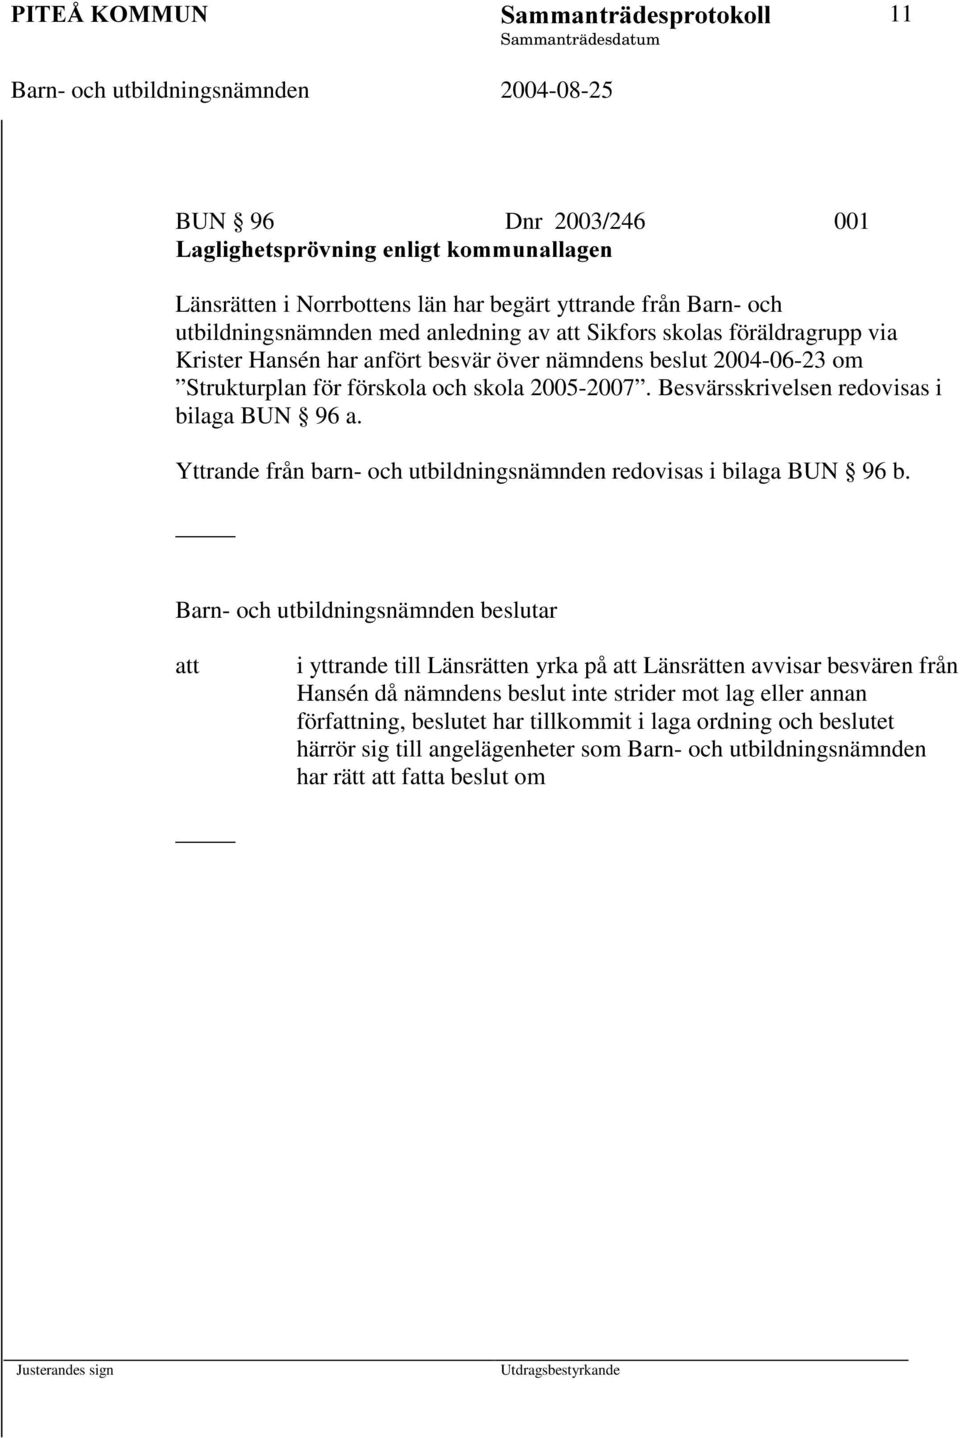 Sikfors skolas föräldragrupp via Krister Hansén har anfört besvär över nämndens beslut 2004-06-23 om Strukturplan för förskola och skola 2005-2007. Besvärsskrivelsen redovisas i bilaga BUN 96 a.